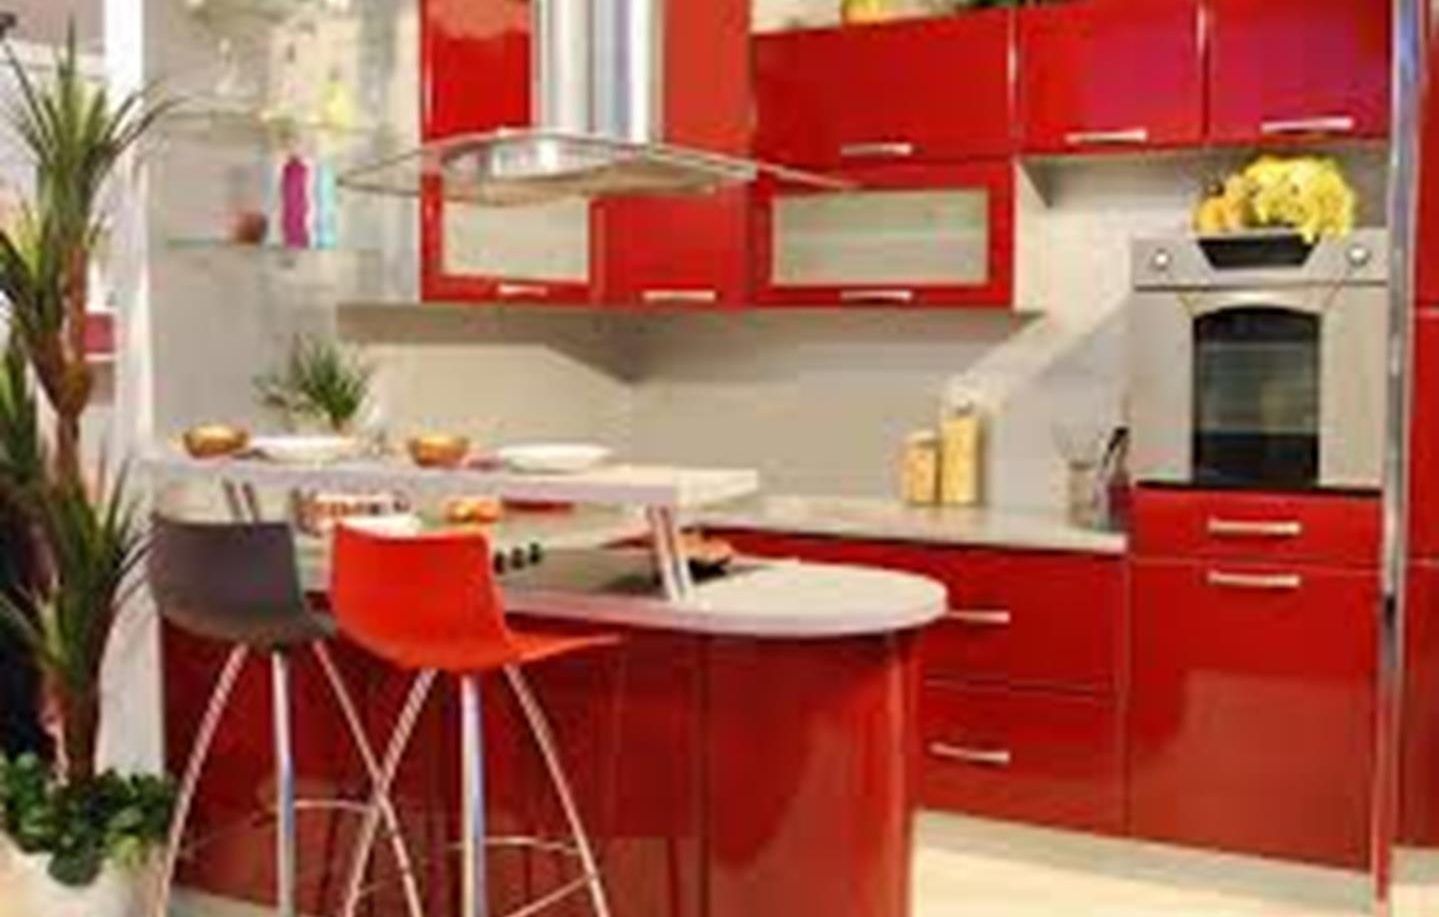 Keuken in rood